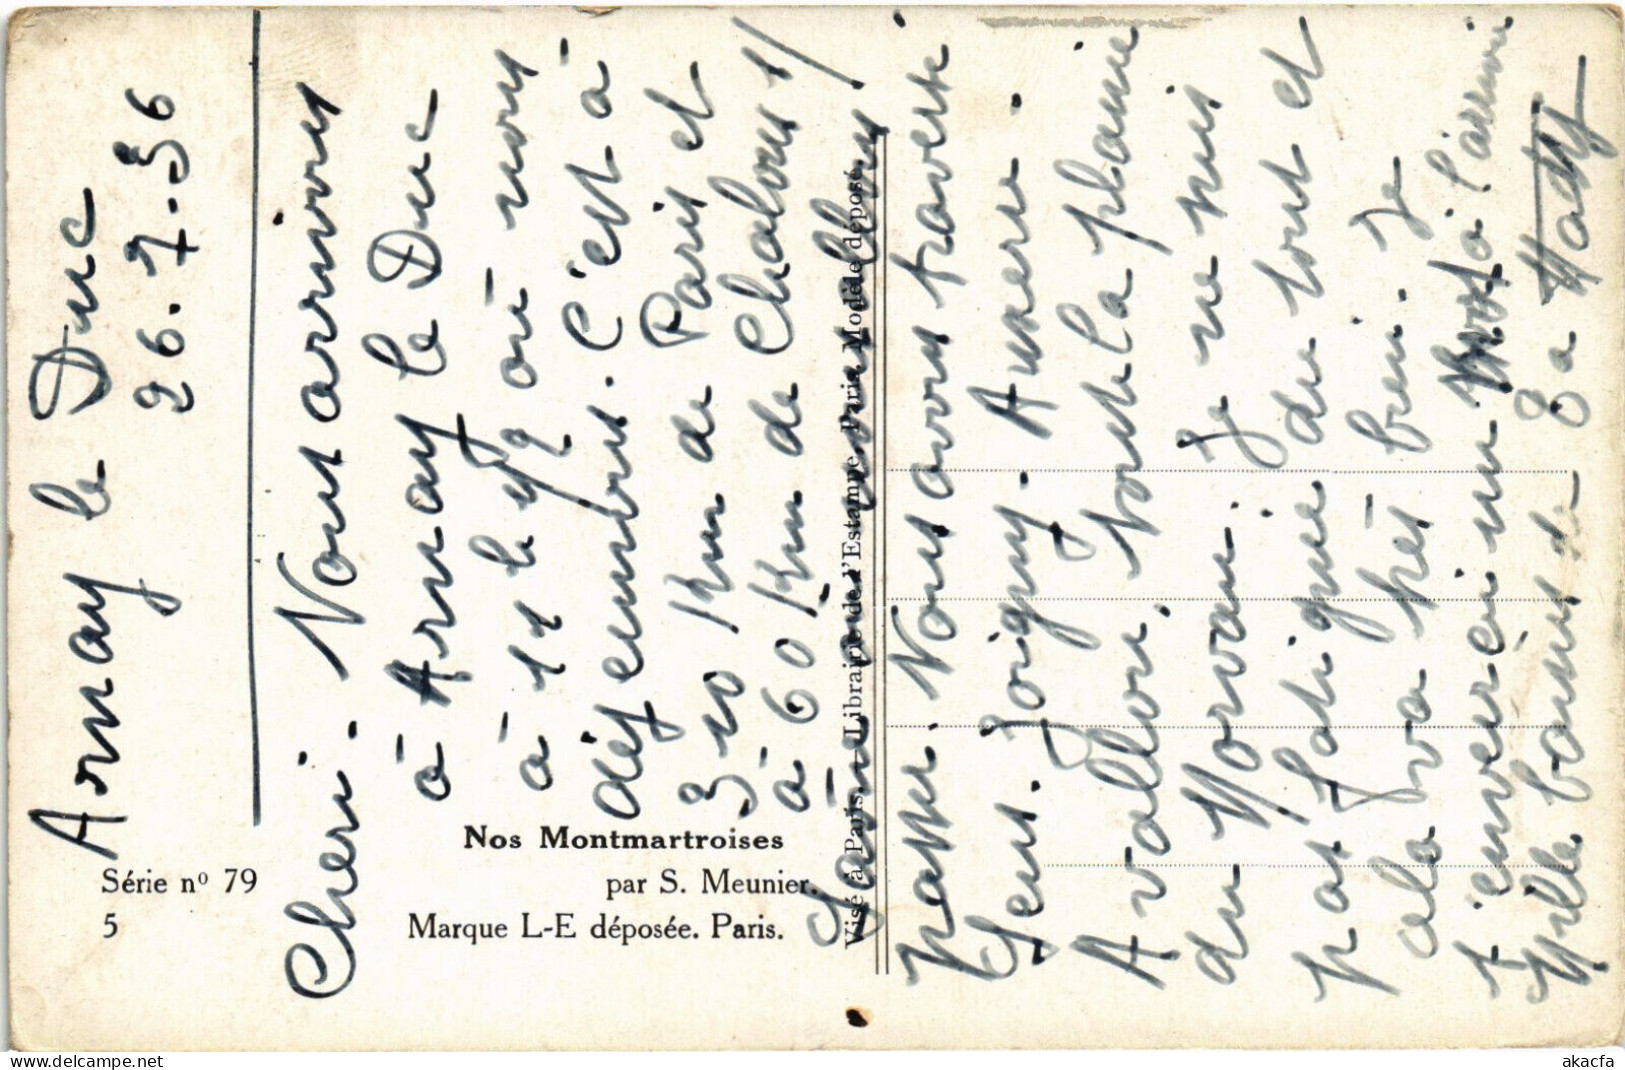 PC ARTIST SIGNED, MEUNIER, NOS MONTMARTROISES, Vintage Postcard (b51681) - Meunier, S.